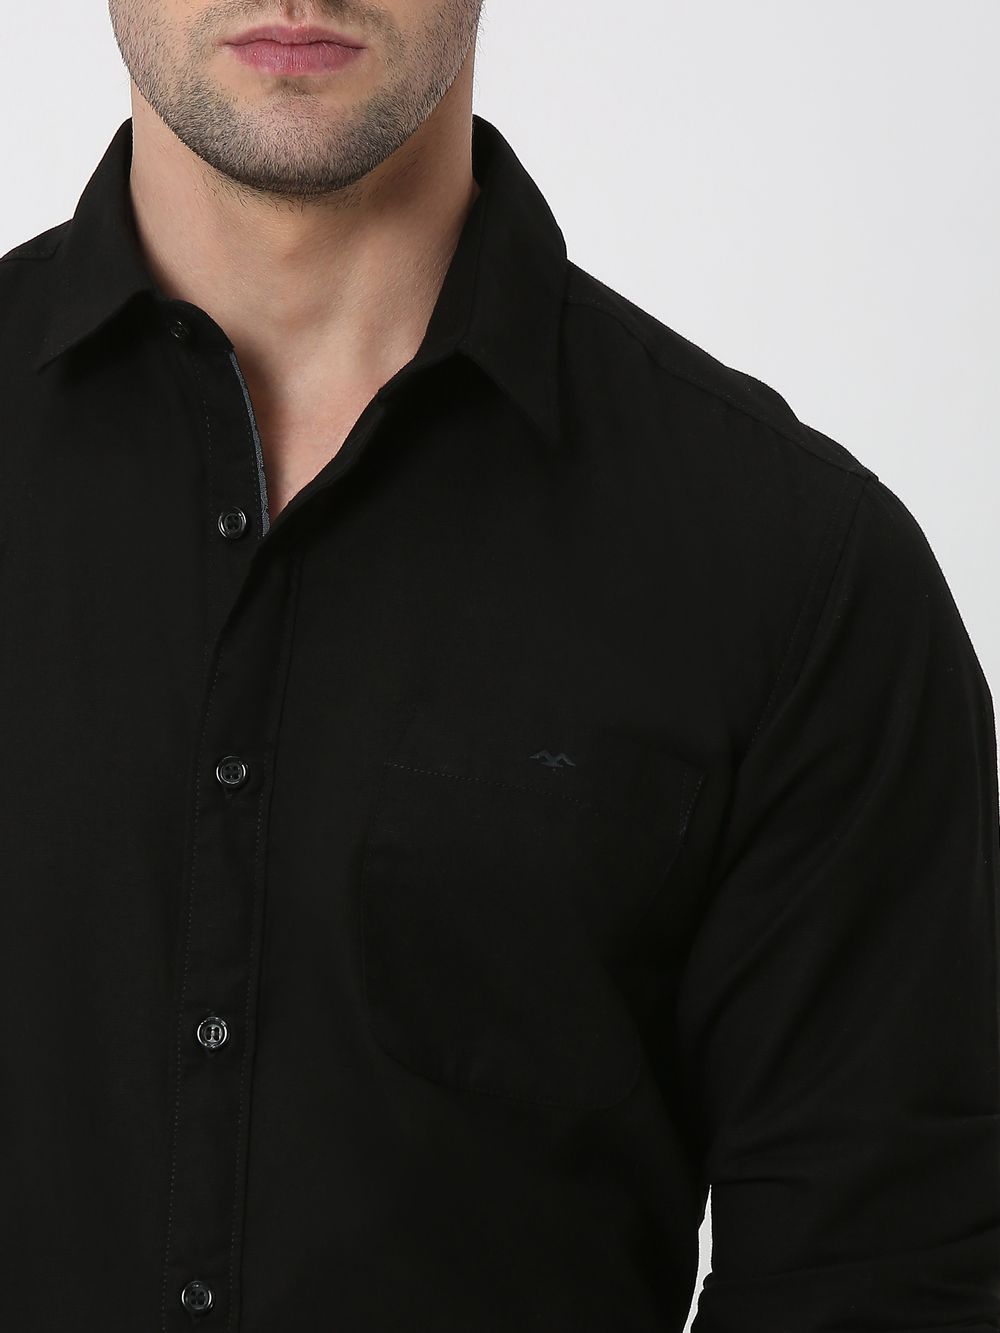 Black Cotton Linen Plain Slim Fit Casual Shirt